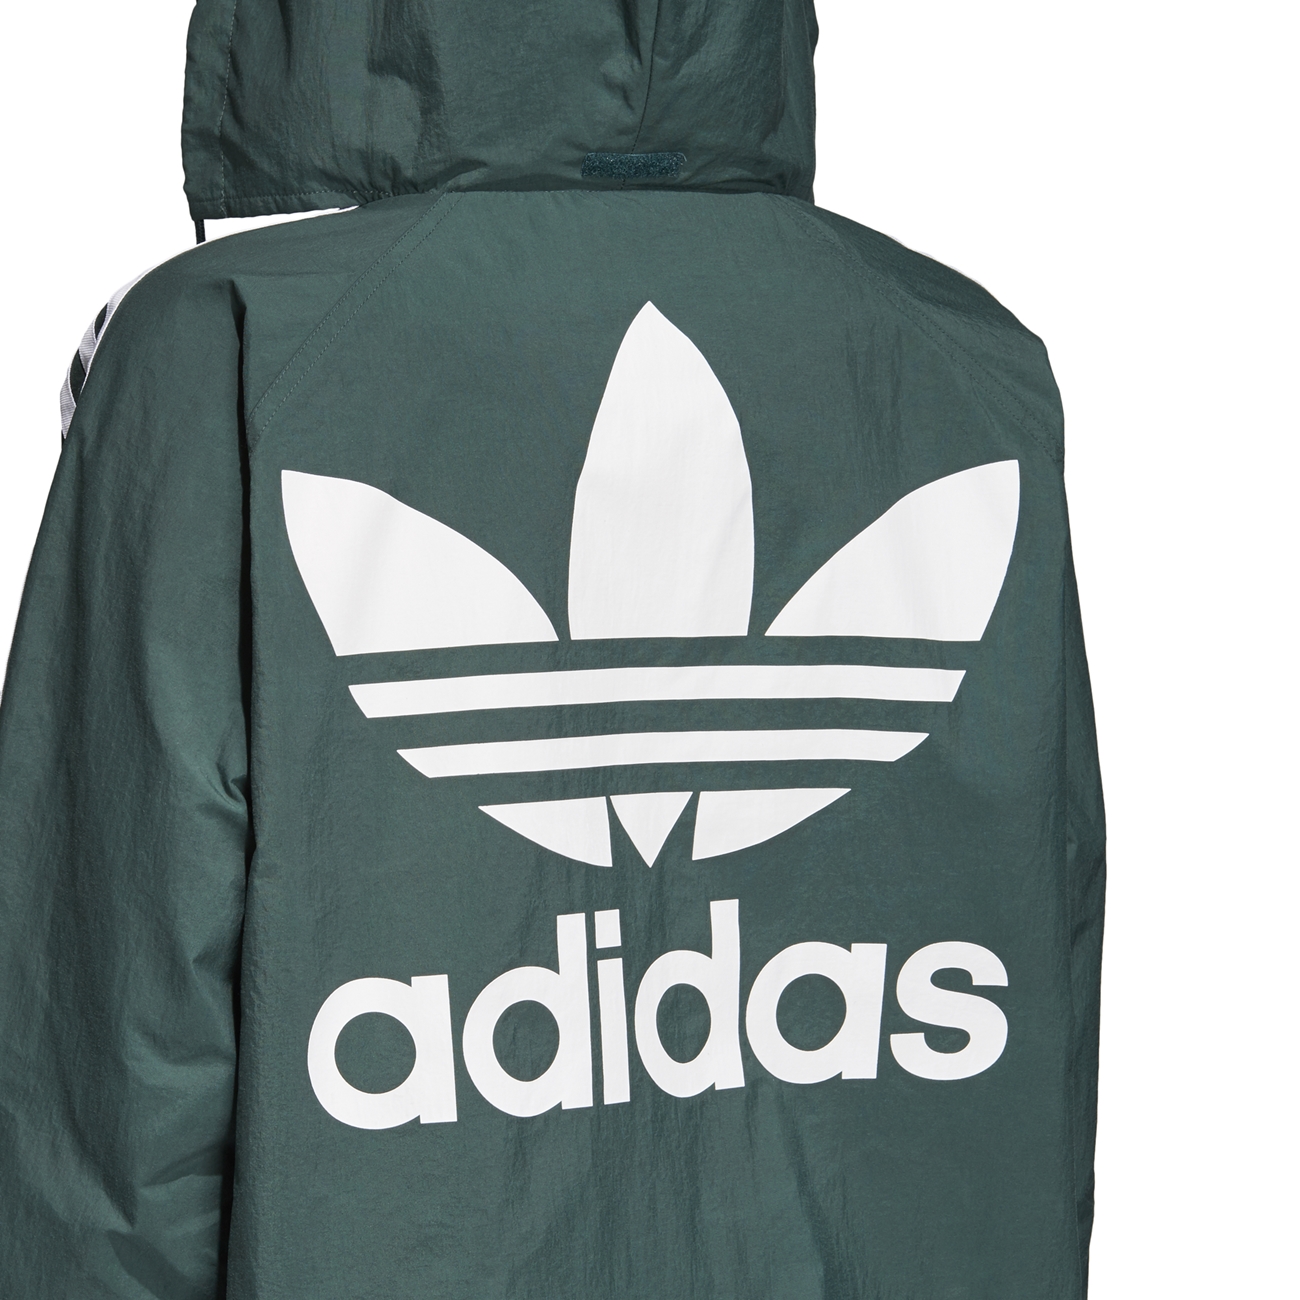 Adidas Originals Jacket - manelsanchez.com